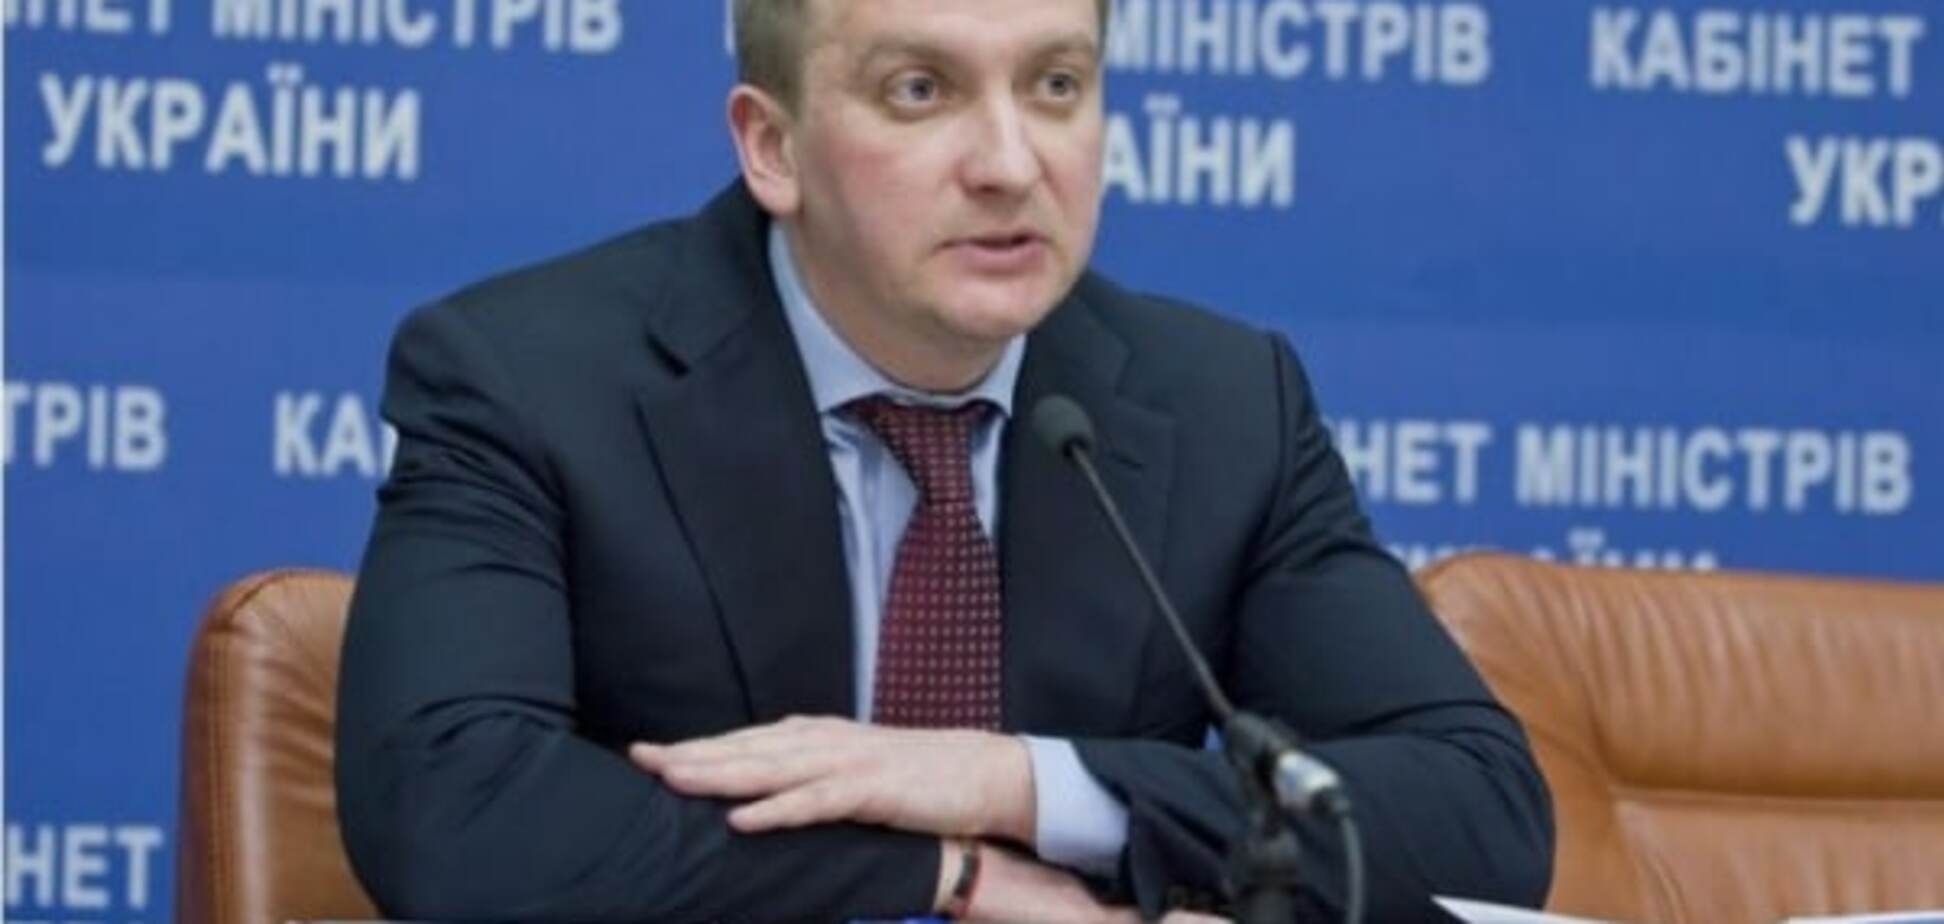 Мільйони на рахунках: міністр юстиції Петренко показав, скільки заробив в 2015 році. Фотофакт